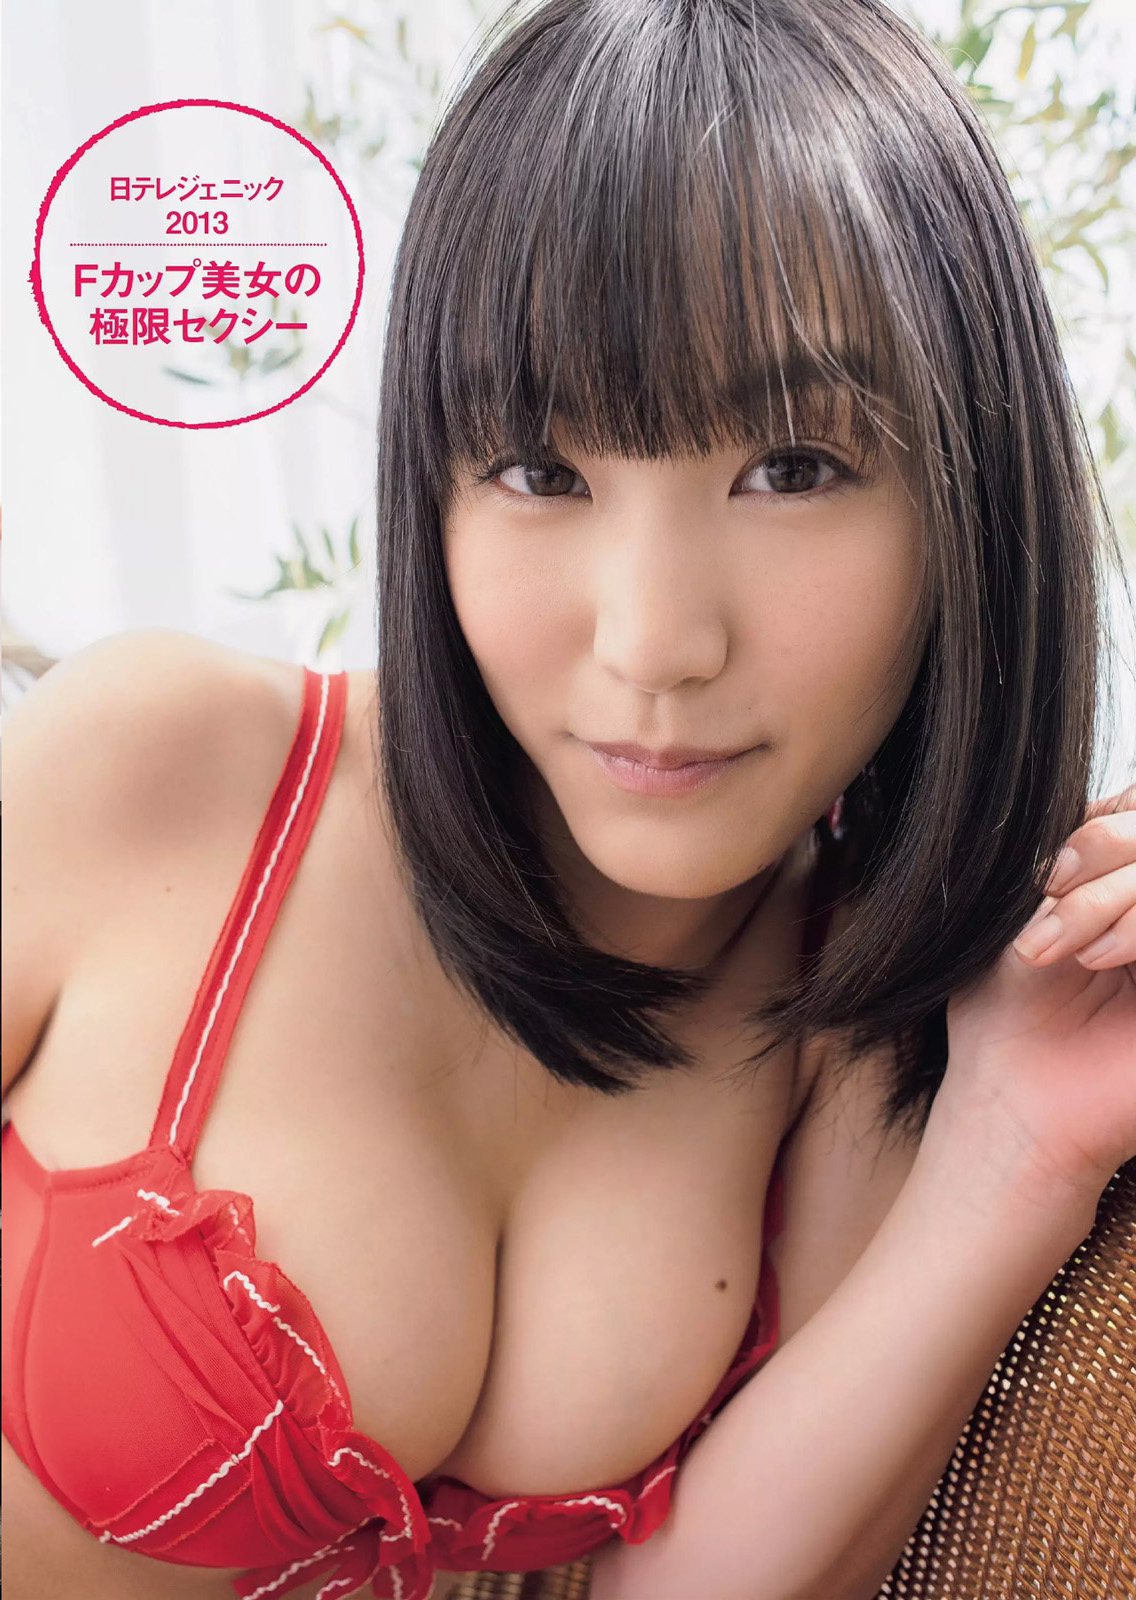 は ま だ ゆ り, 浜 田 由 梨, Hamada Yuri - Weekly Playboy, 2014.06.30.